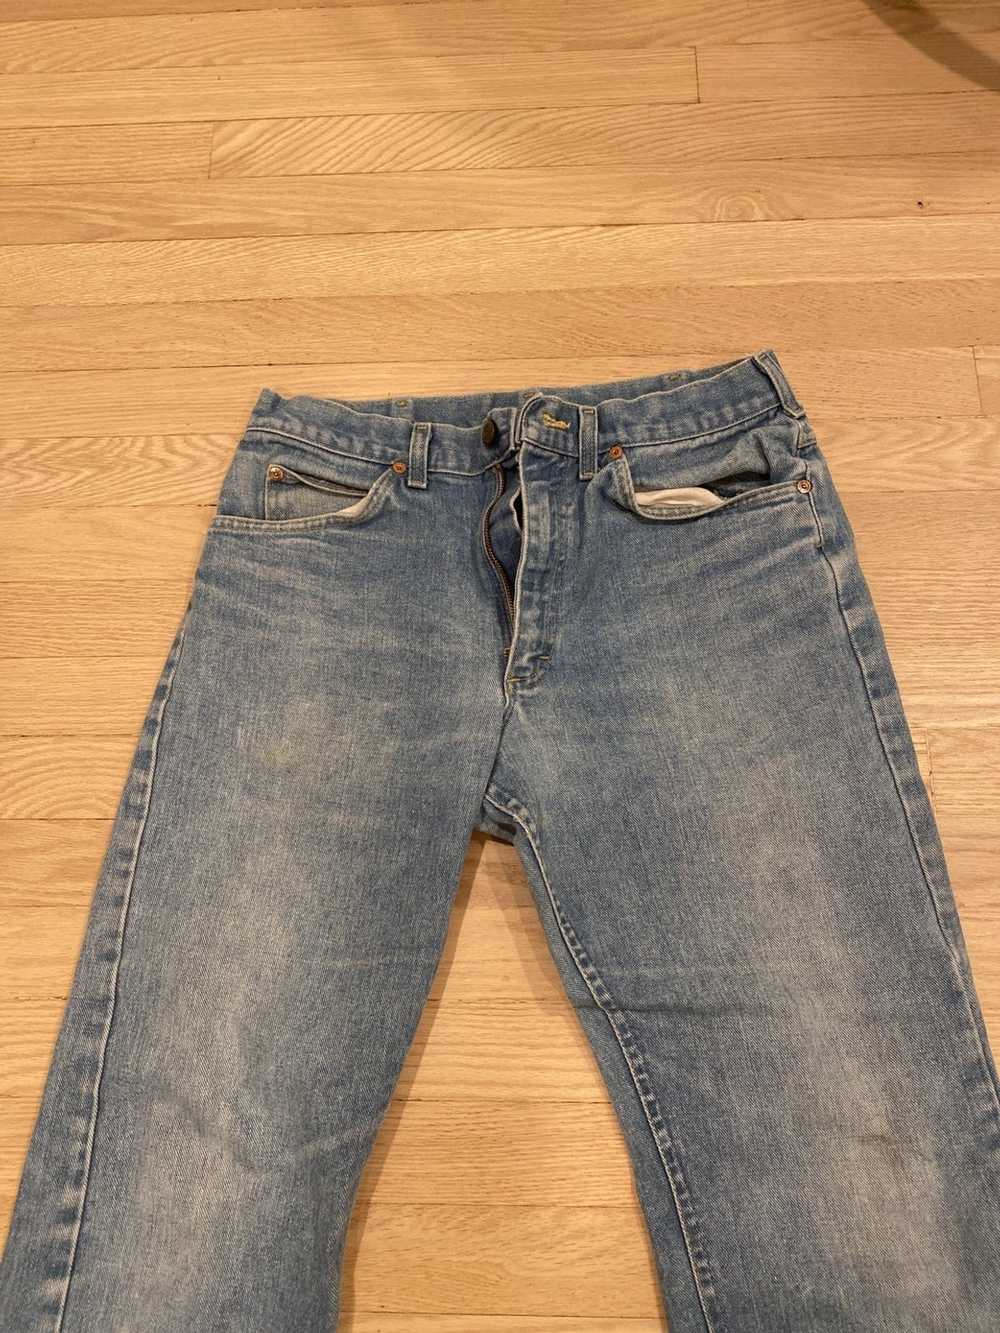 Lee Vintage Lee Jeans - image 2